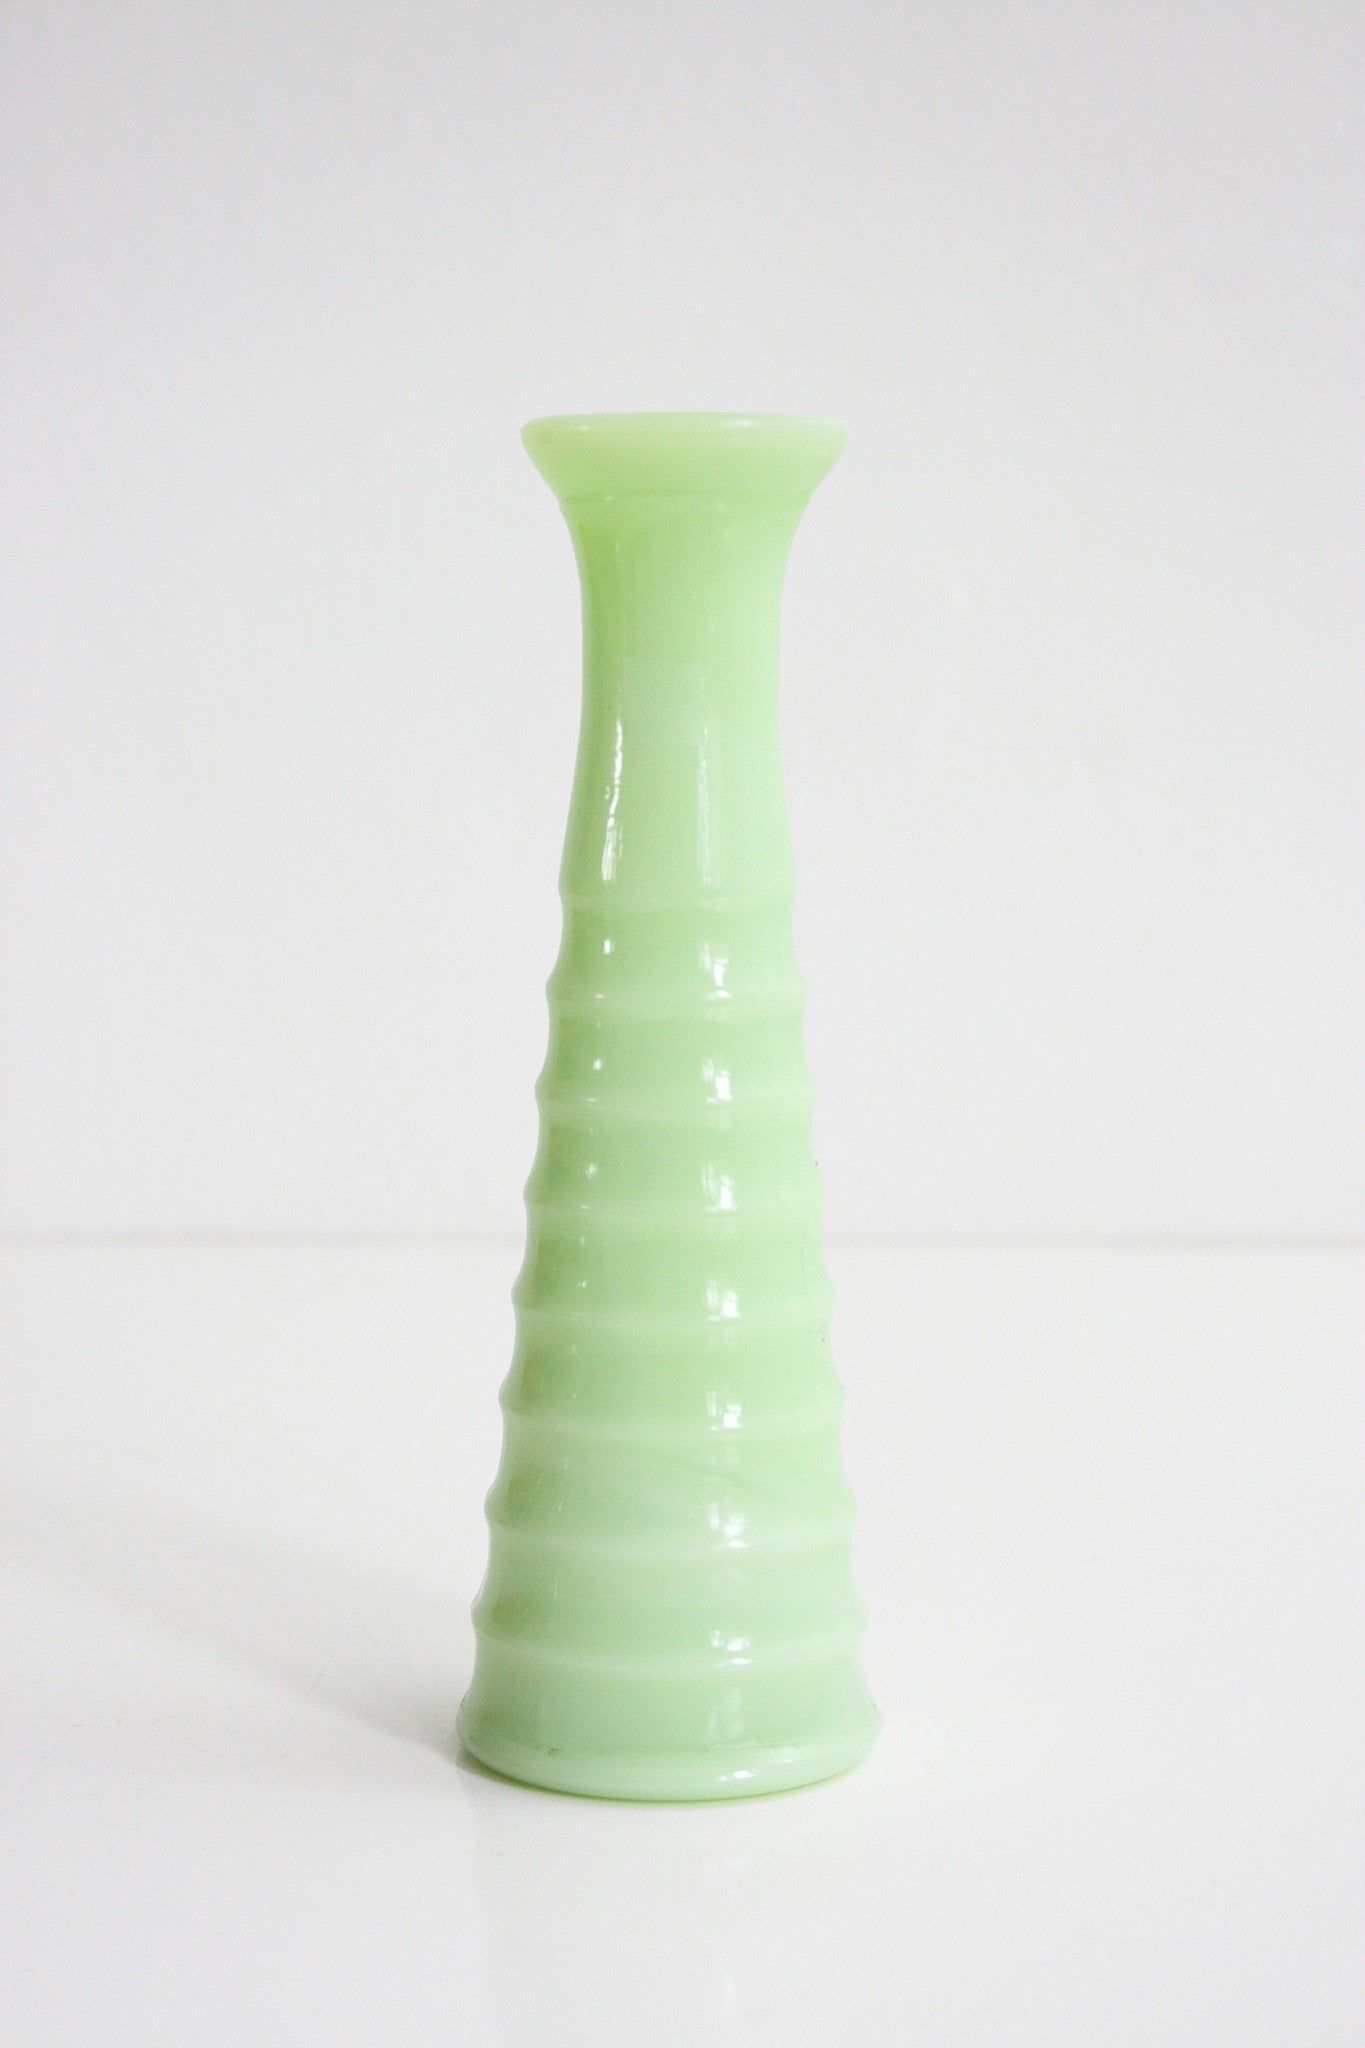 SOLD - Vintage Jeannette Jadeite Bud Vase / Mid Century Jadite Vase